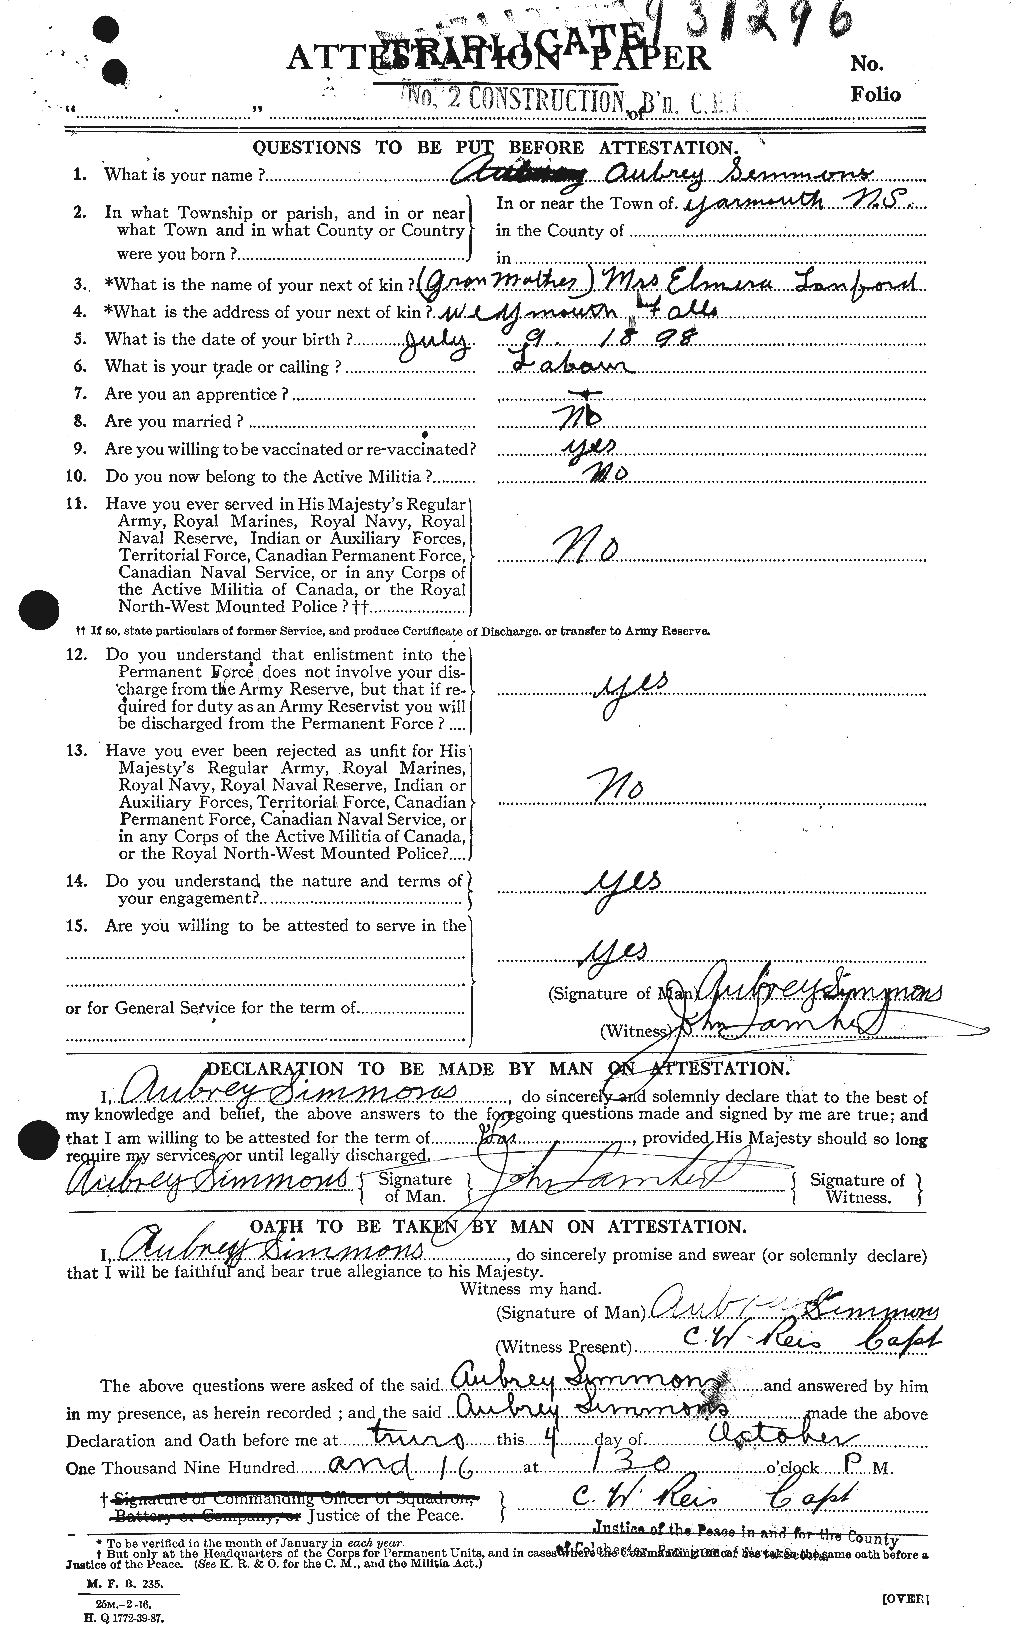 Dossiers du Personnel de la Première Guerre mondiale - CEC 099150a